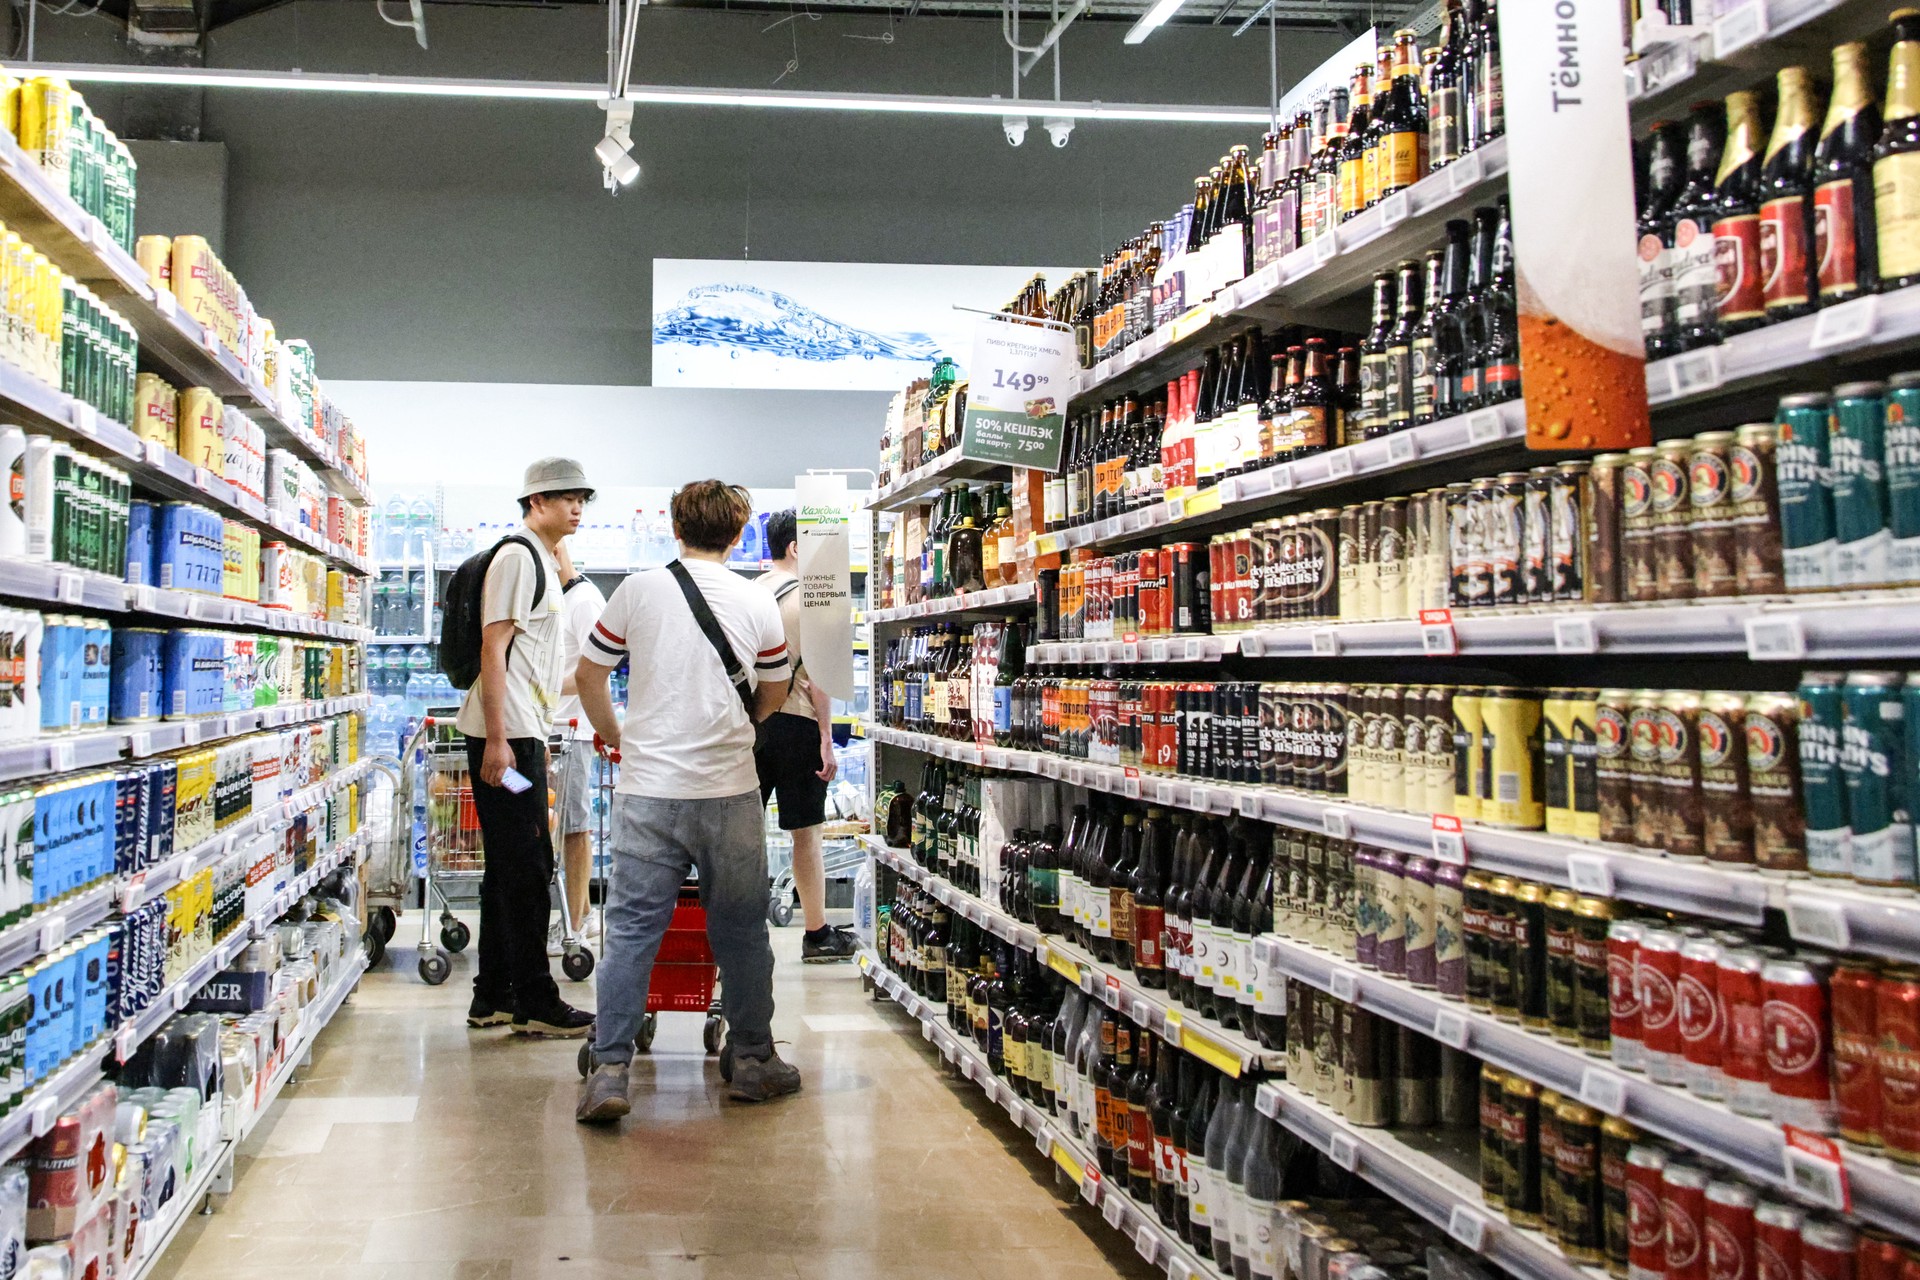 Импортозамещение или «ничего хорошего»? Что эксперты думают о росте продаж слабого алкоголя в России